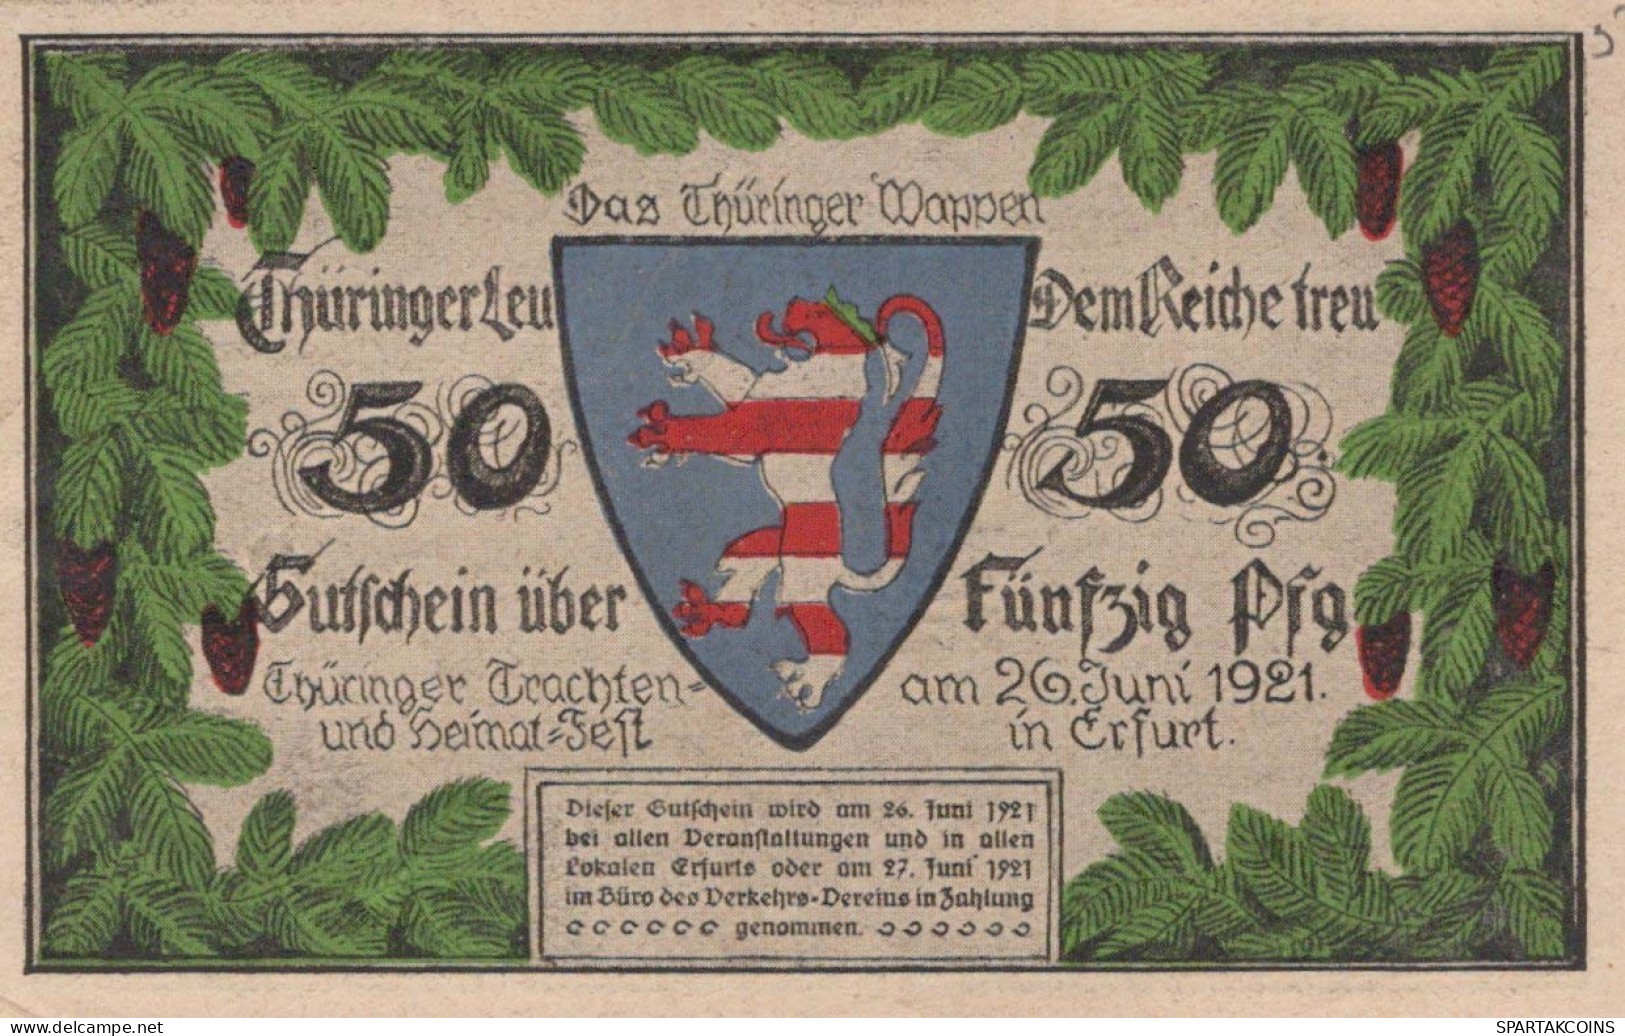 50 PFENNIG 1921 Stadt ERFURT Saxony UNC DEUTSCHLAND Notgeld Banknote #PB321 - [11] Local Banknote Issues